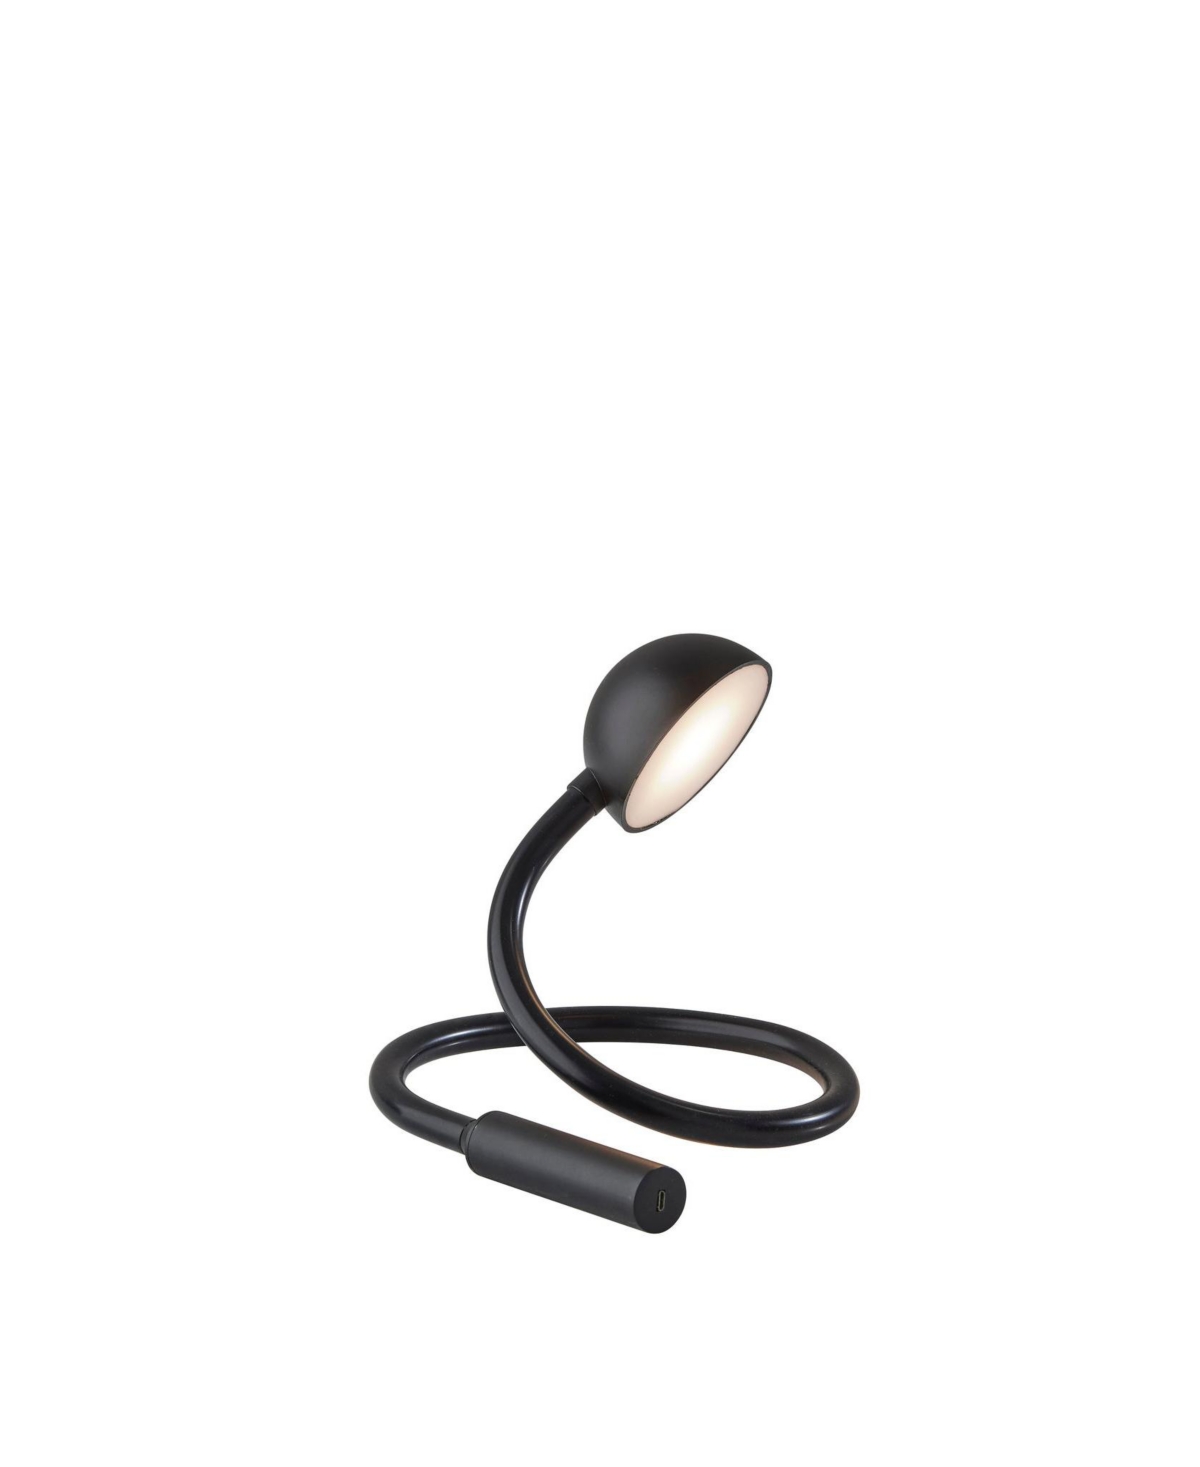 Adesso Cobra Led Desk Lamp In Black